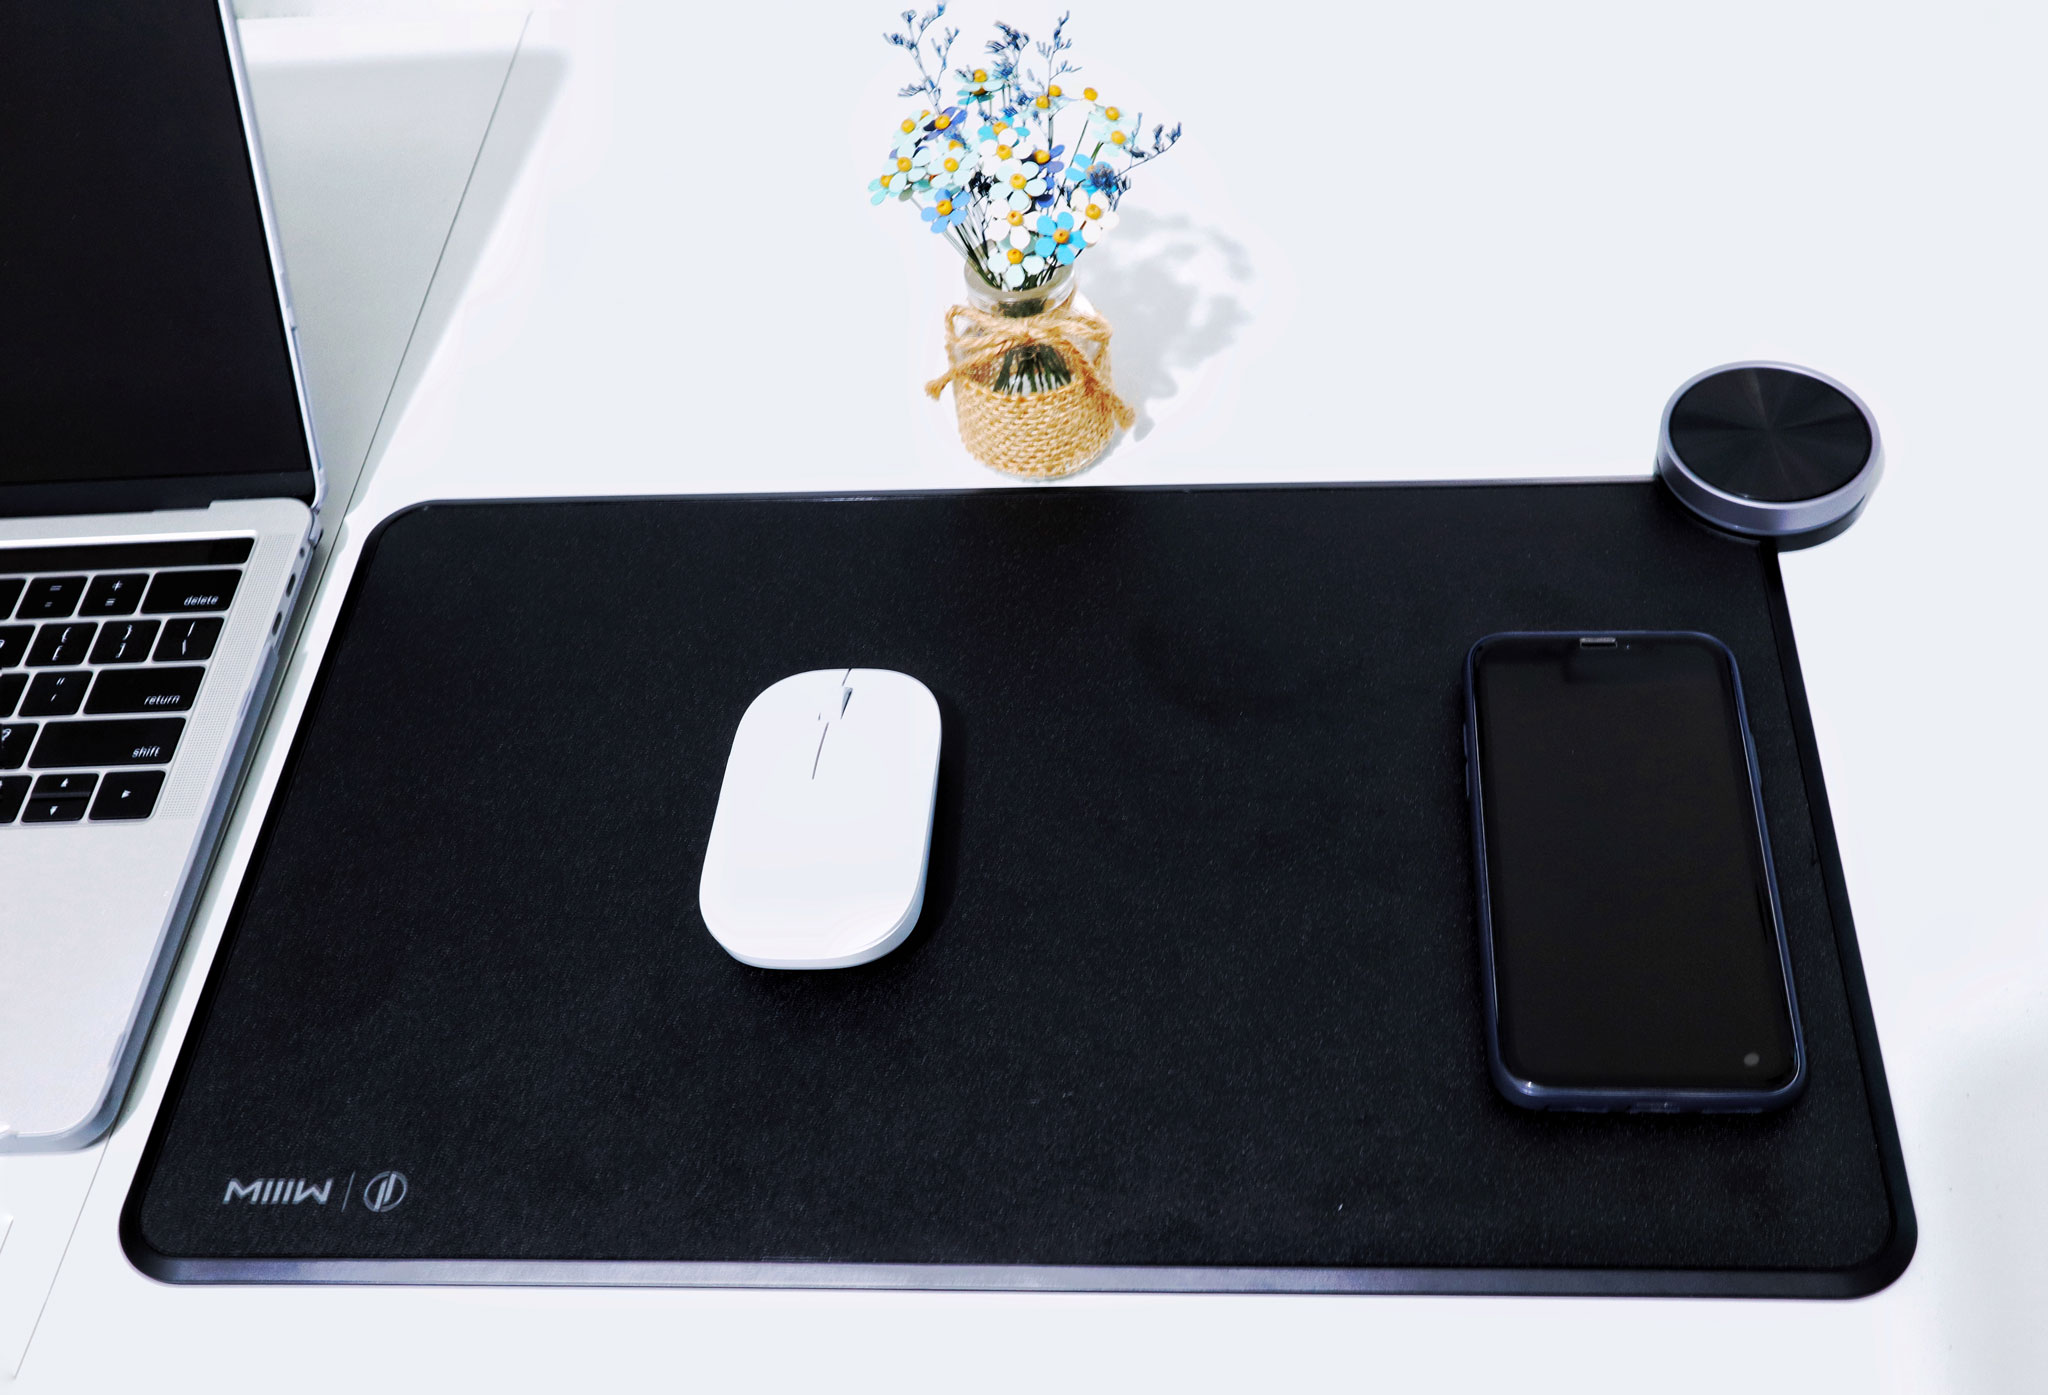 Trên tay lót chuột SmartPad: sạc nhanh chuẩn Qi, Bluetooth LE 4.0, có đèn RGB chất lượng